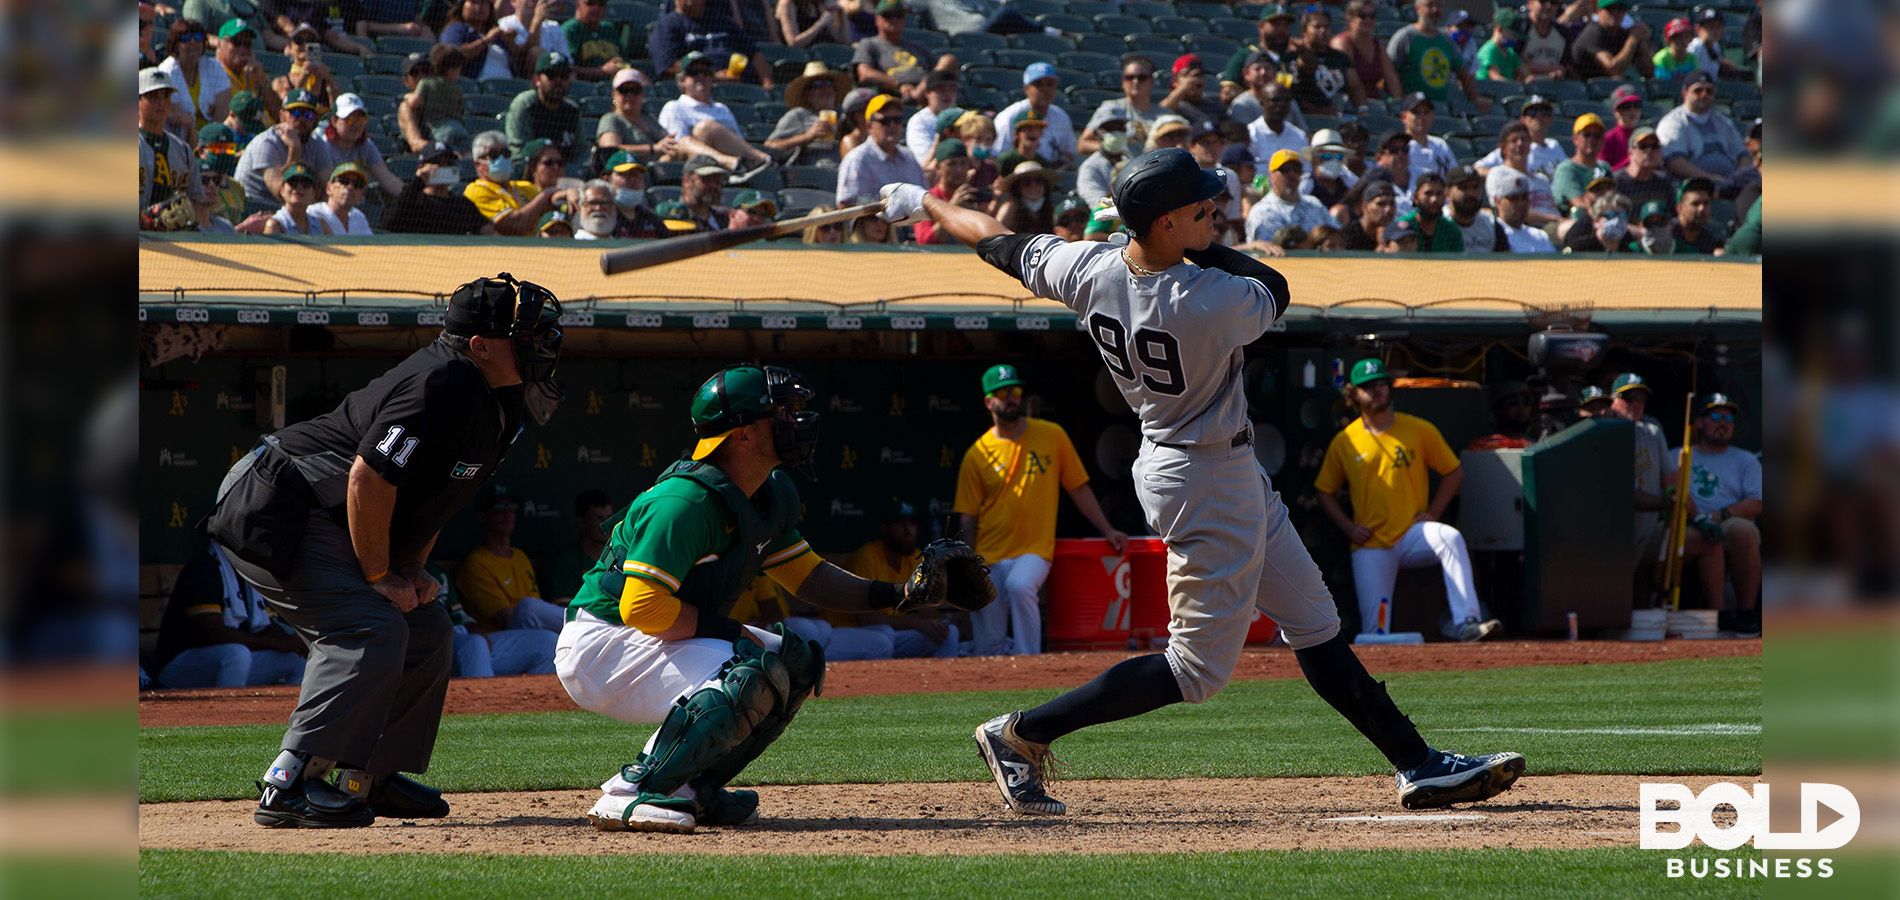 Aaron Judge hitting a baseball